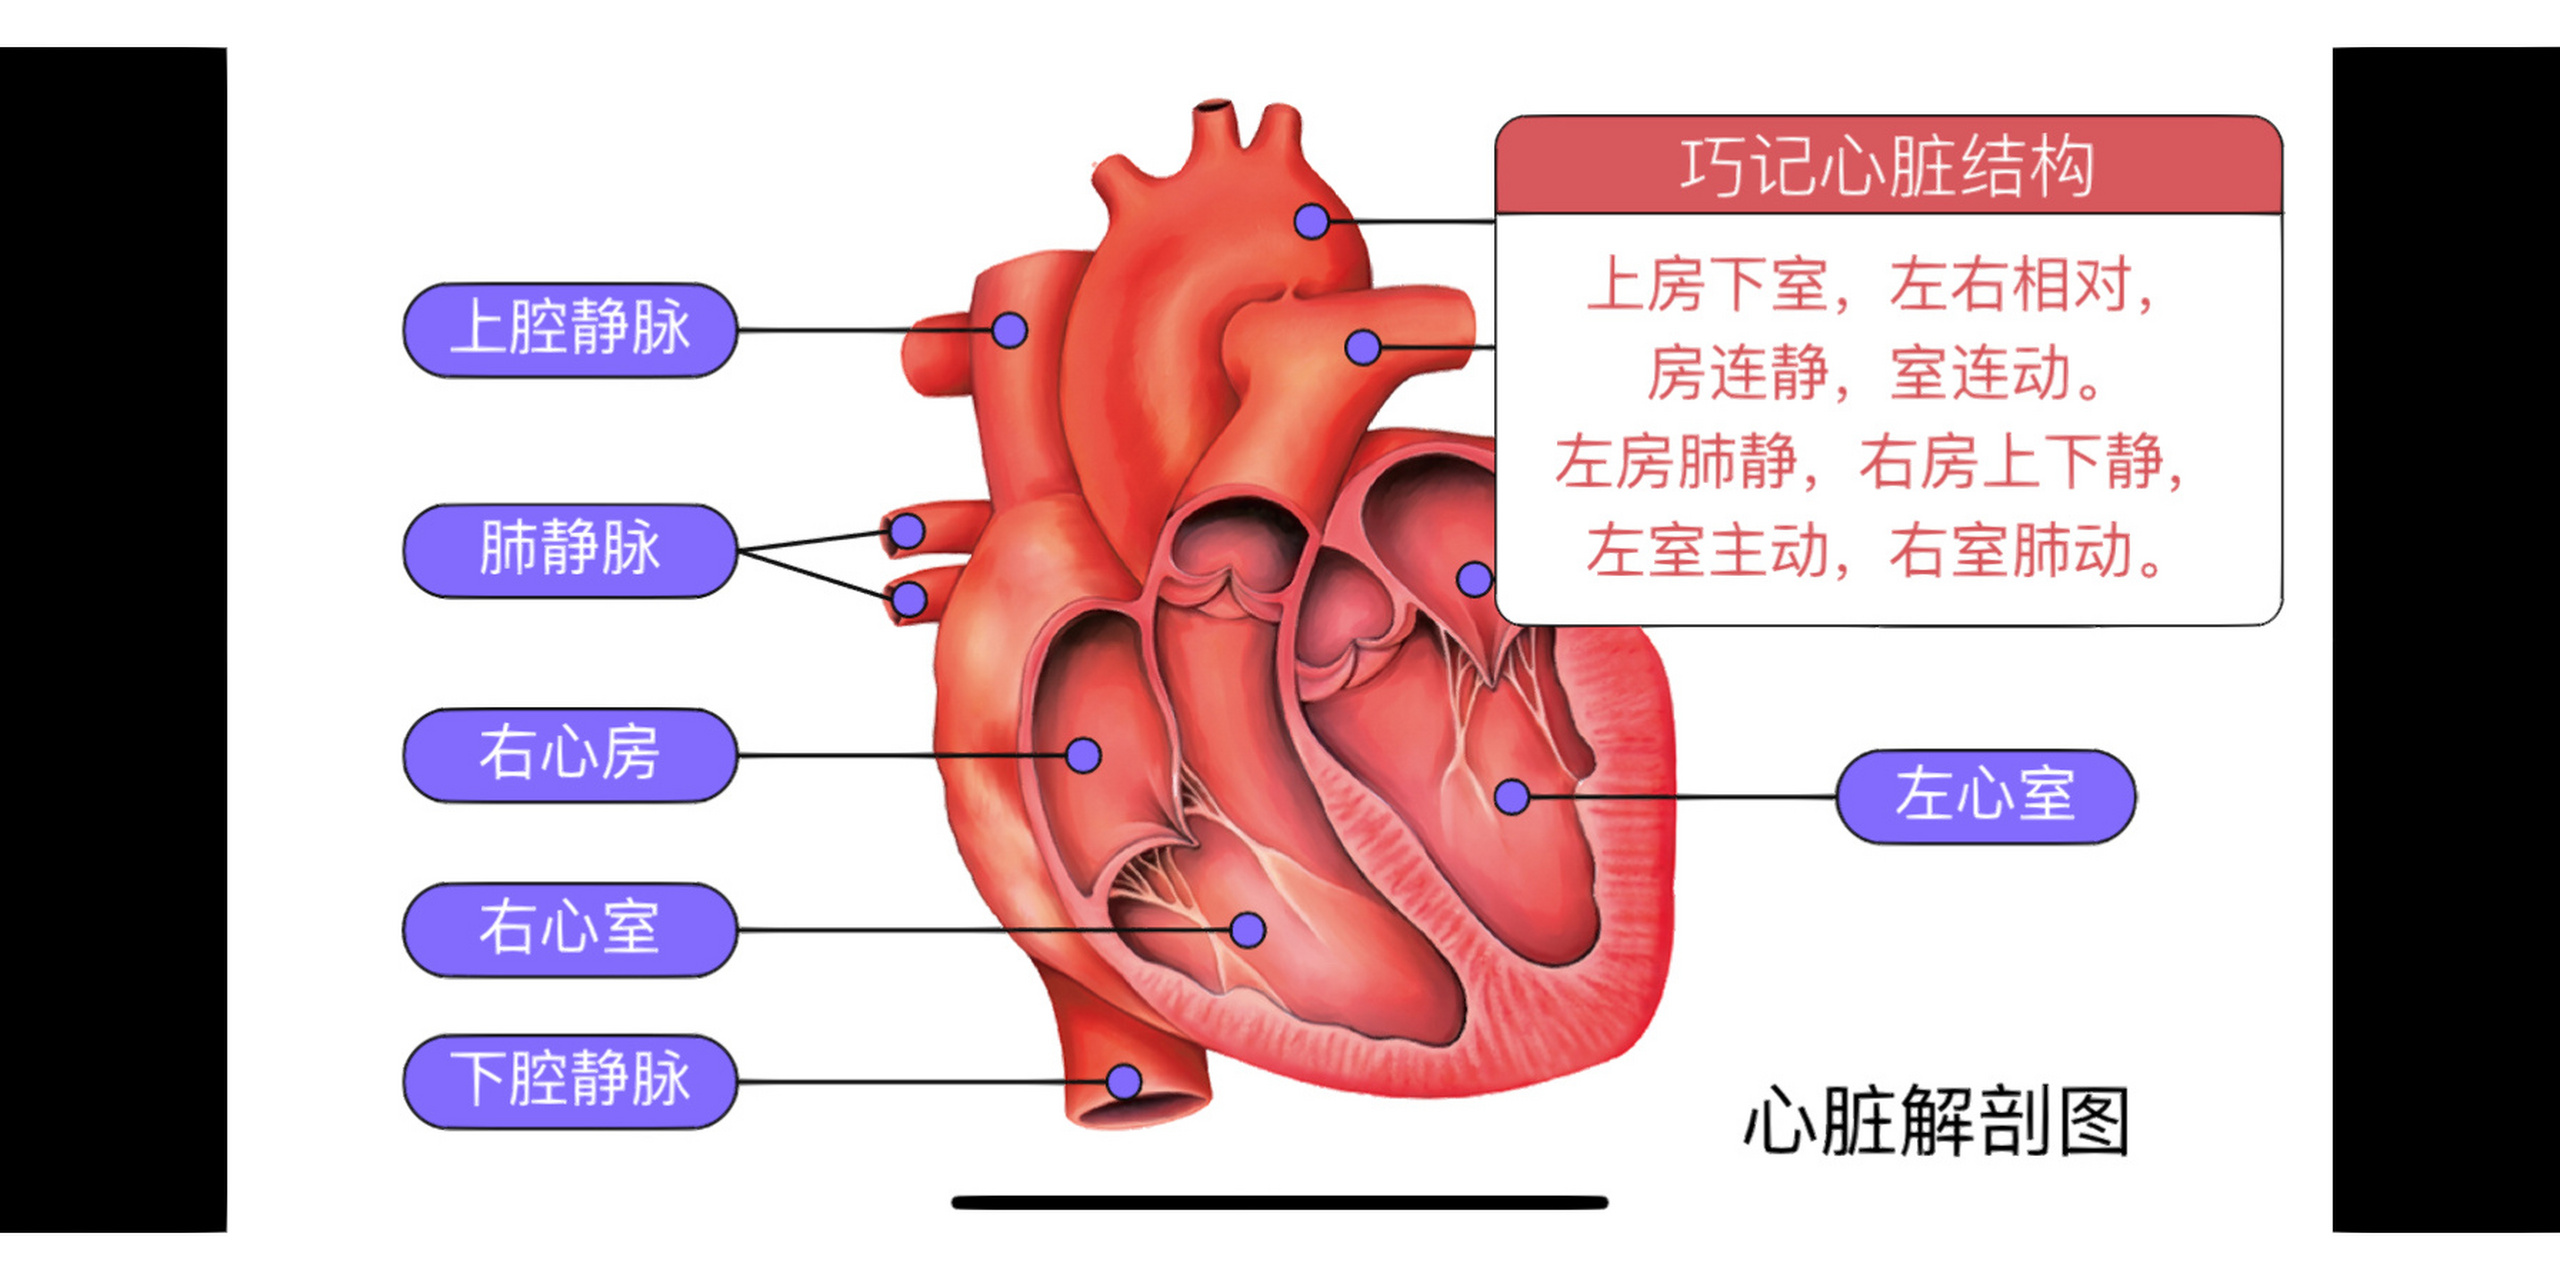 人体心脏工作原理图片